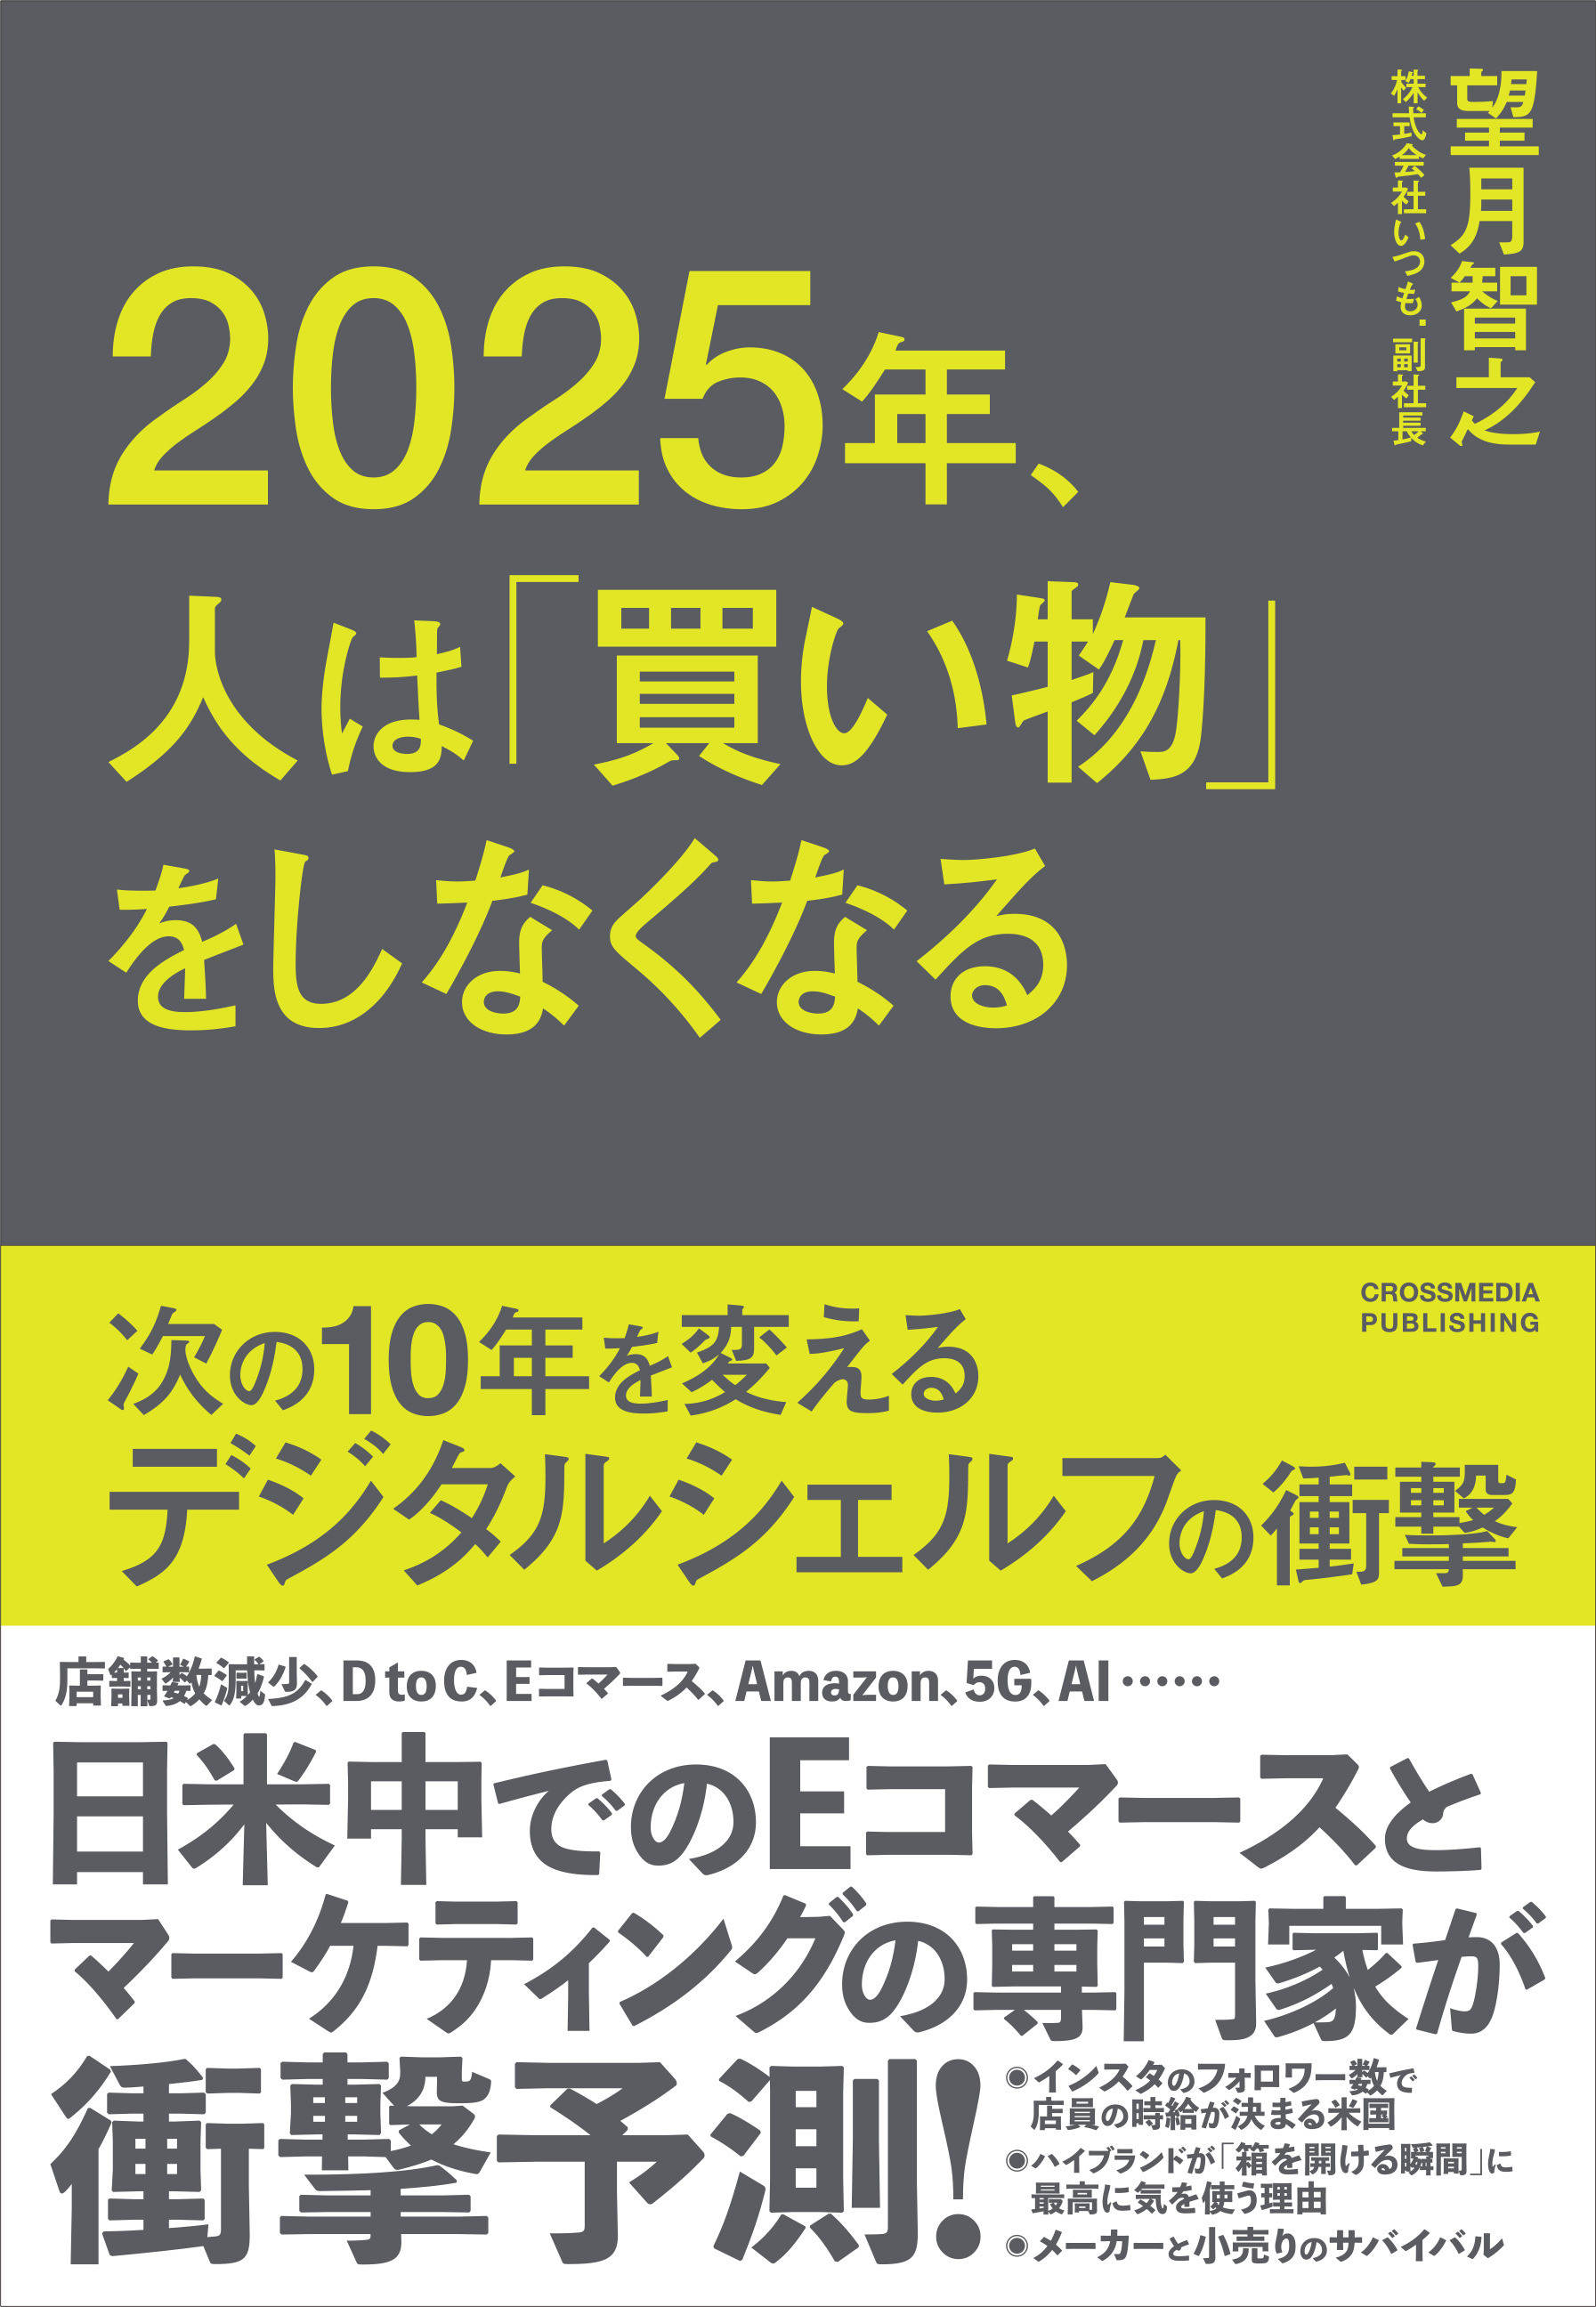 「2025年、人は「買い物」をしなくなる」書籍の表紙